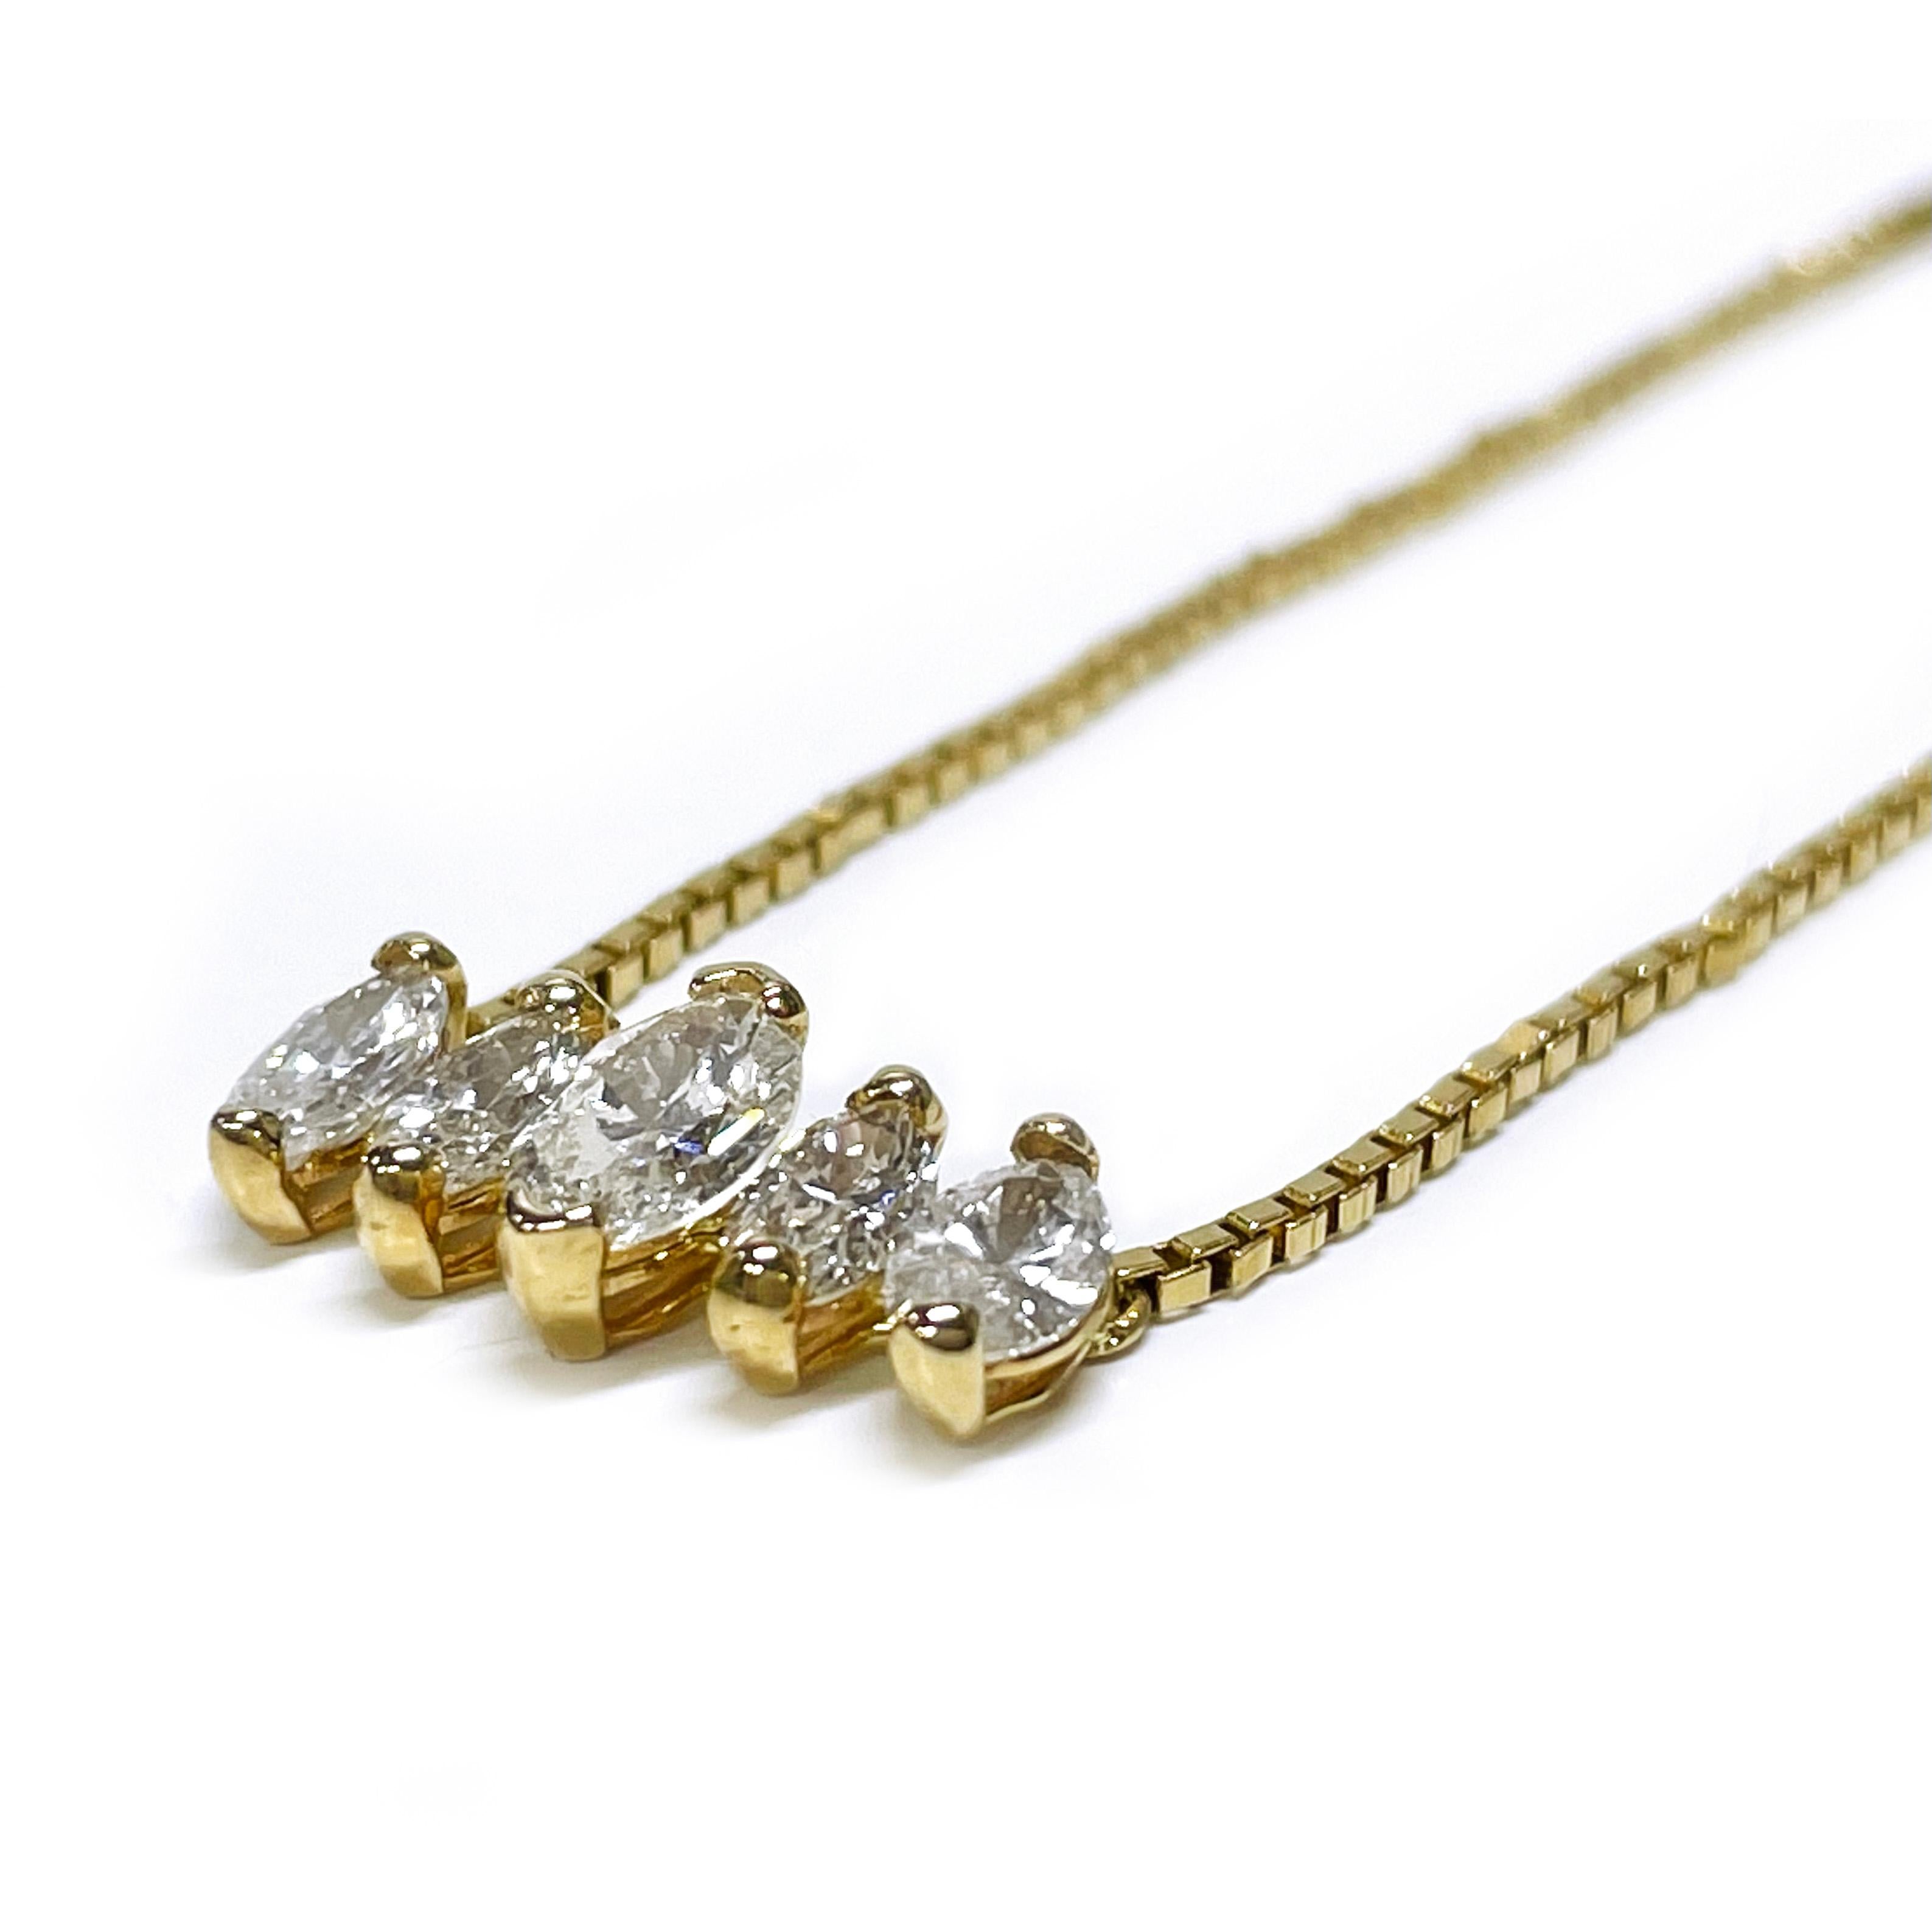 14 Karat Marquise Diamant-Halskette. Die Halskette ist mit fünf Diamanten im Marquiseschliff besetzt, wobei der größte in der Mitte und die kleineren Diamanten an den Seiten liegen. Ein Diamant ist 6,8 x 3,9 mm groß und hat ein Karatgewicht von 0,35